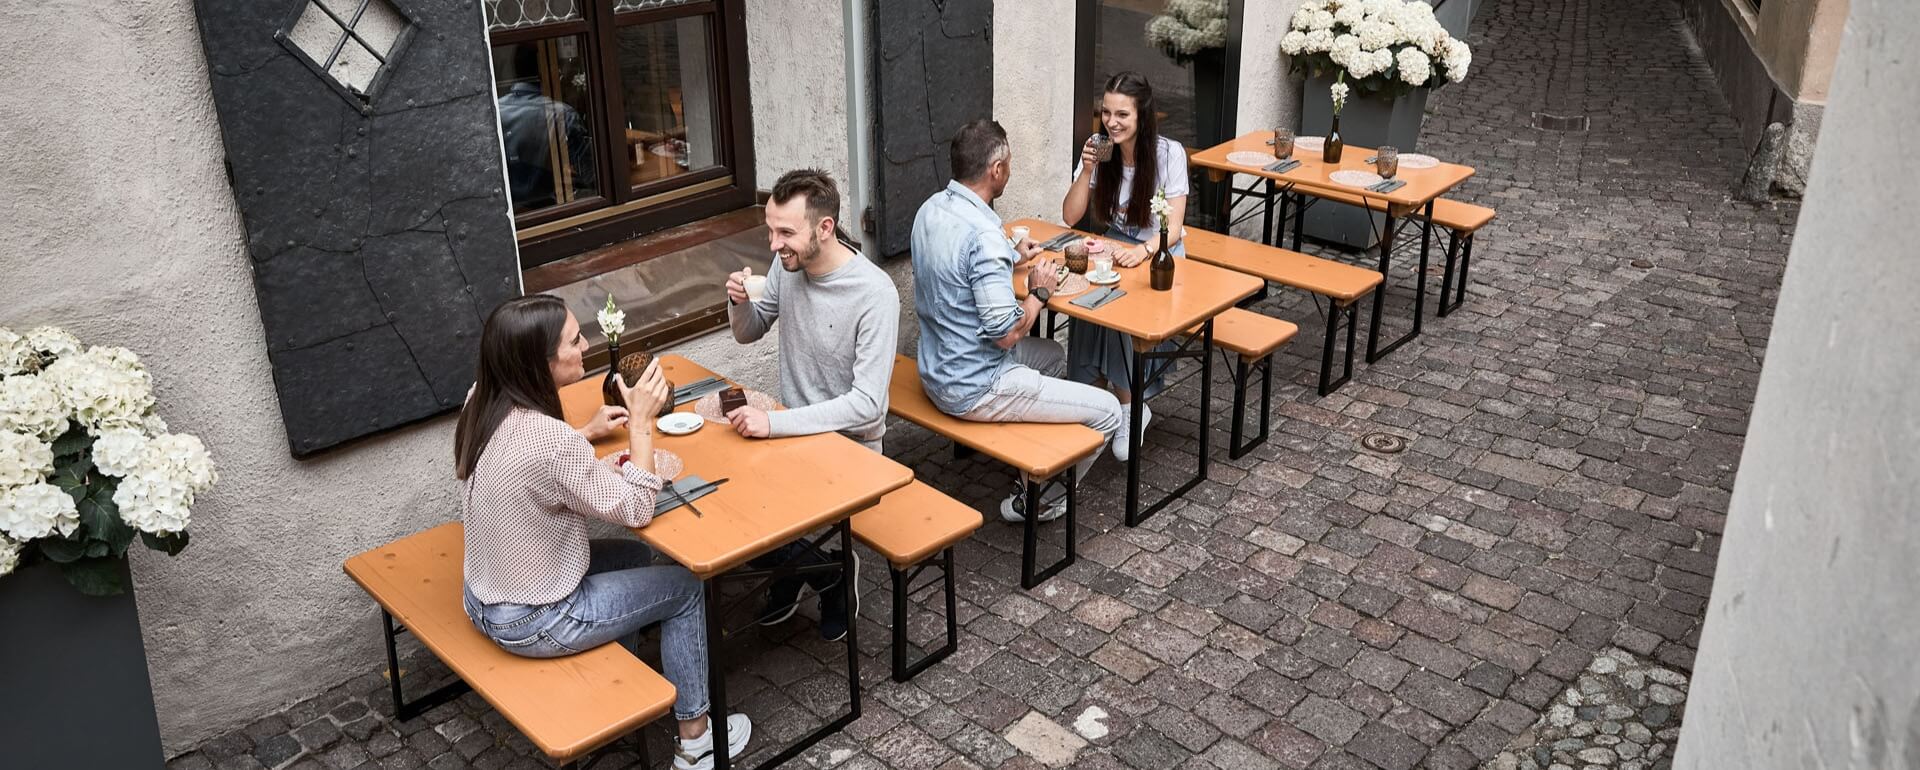 Die kleinen Bierzeltgarnituren Shorty sind im Außenbereich von einem Restaurant in einer Gasse aufgestellt und die Kunden genießen Ihre Getränke.